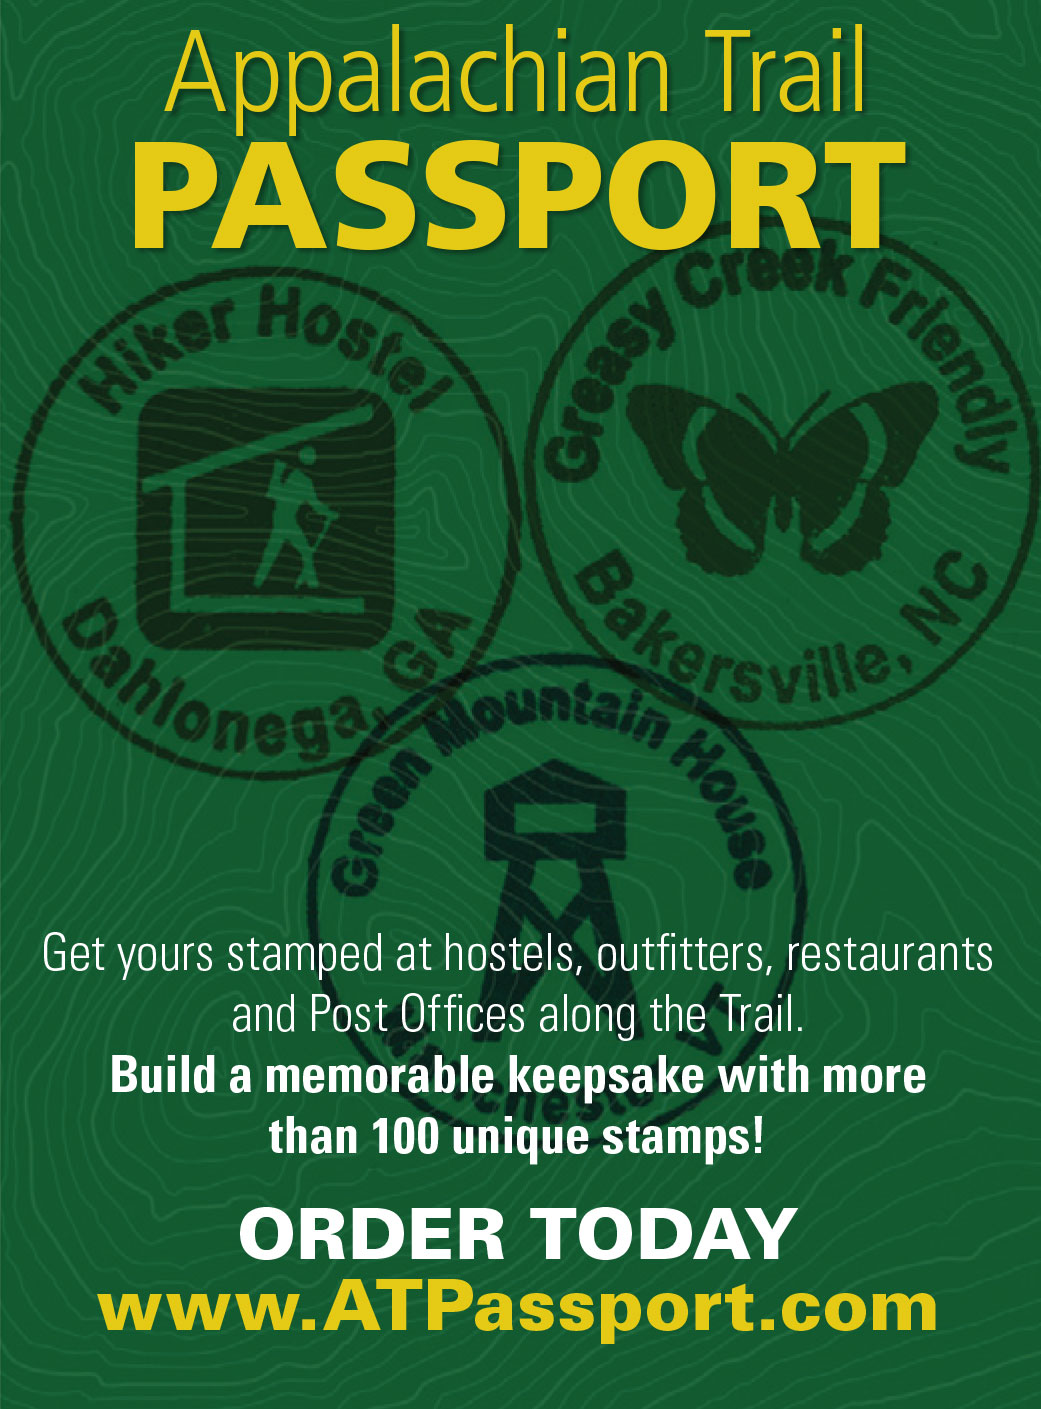 Appalachian Trail Passport Advertisement